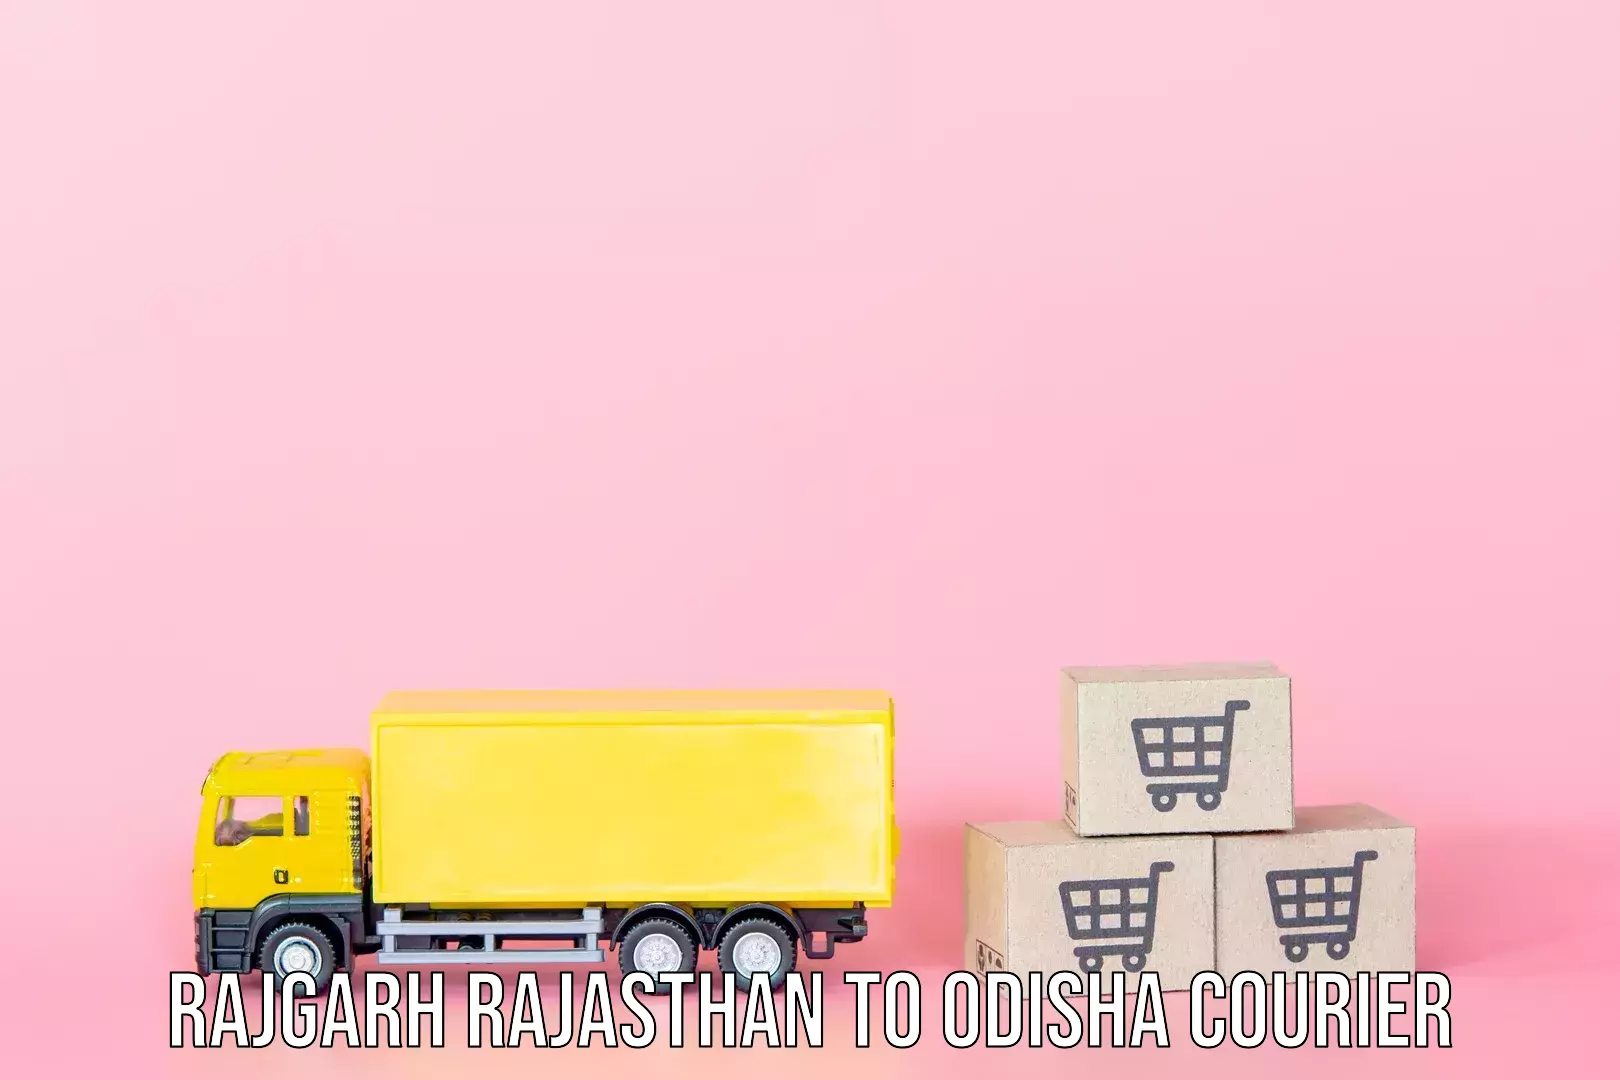 Luggage delivery network Rajgarh Rajasthan to Udayagiri Kandhamal